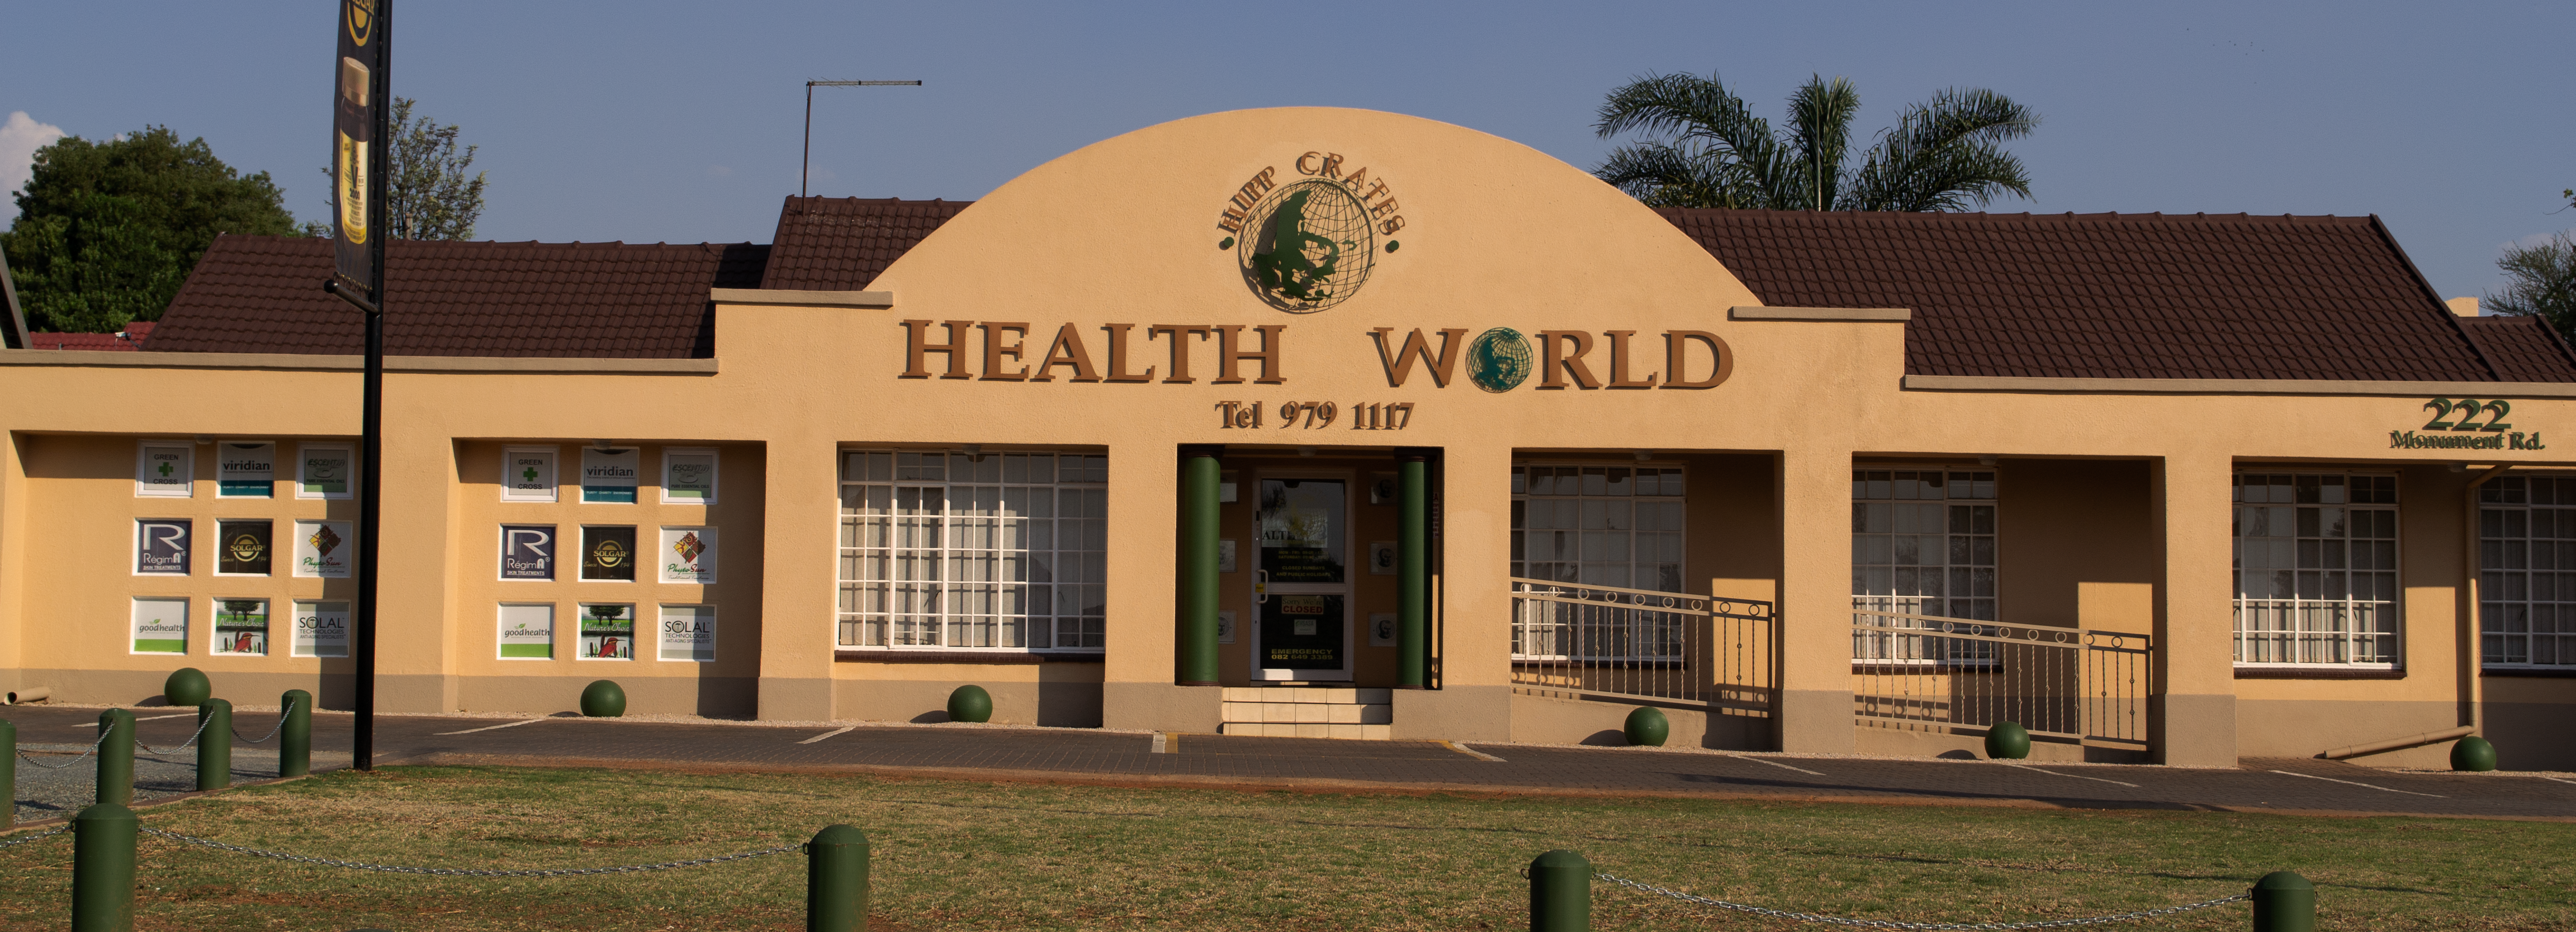 Health world outside